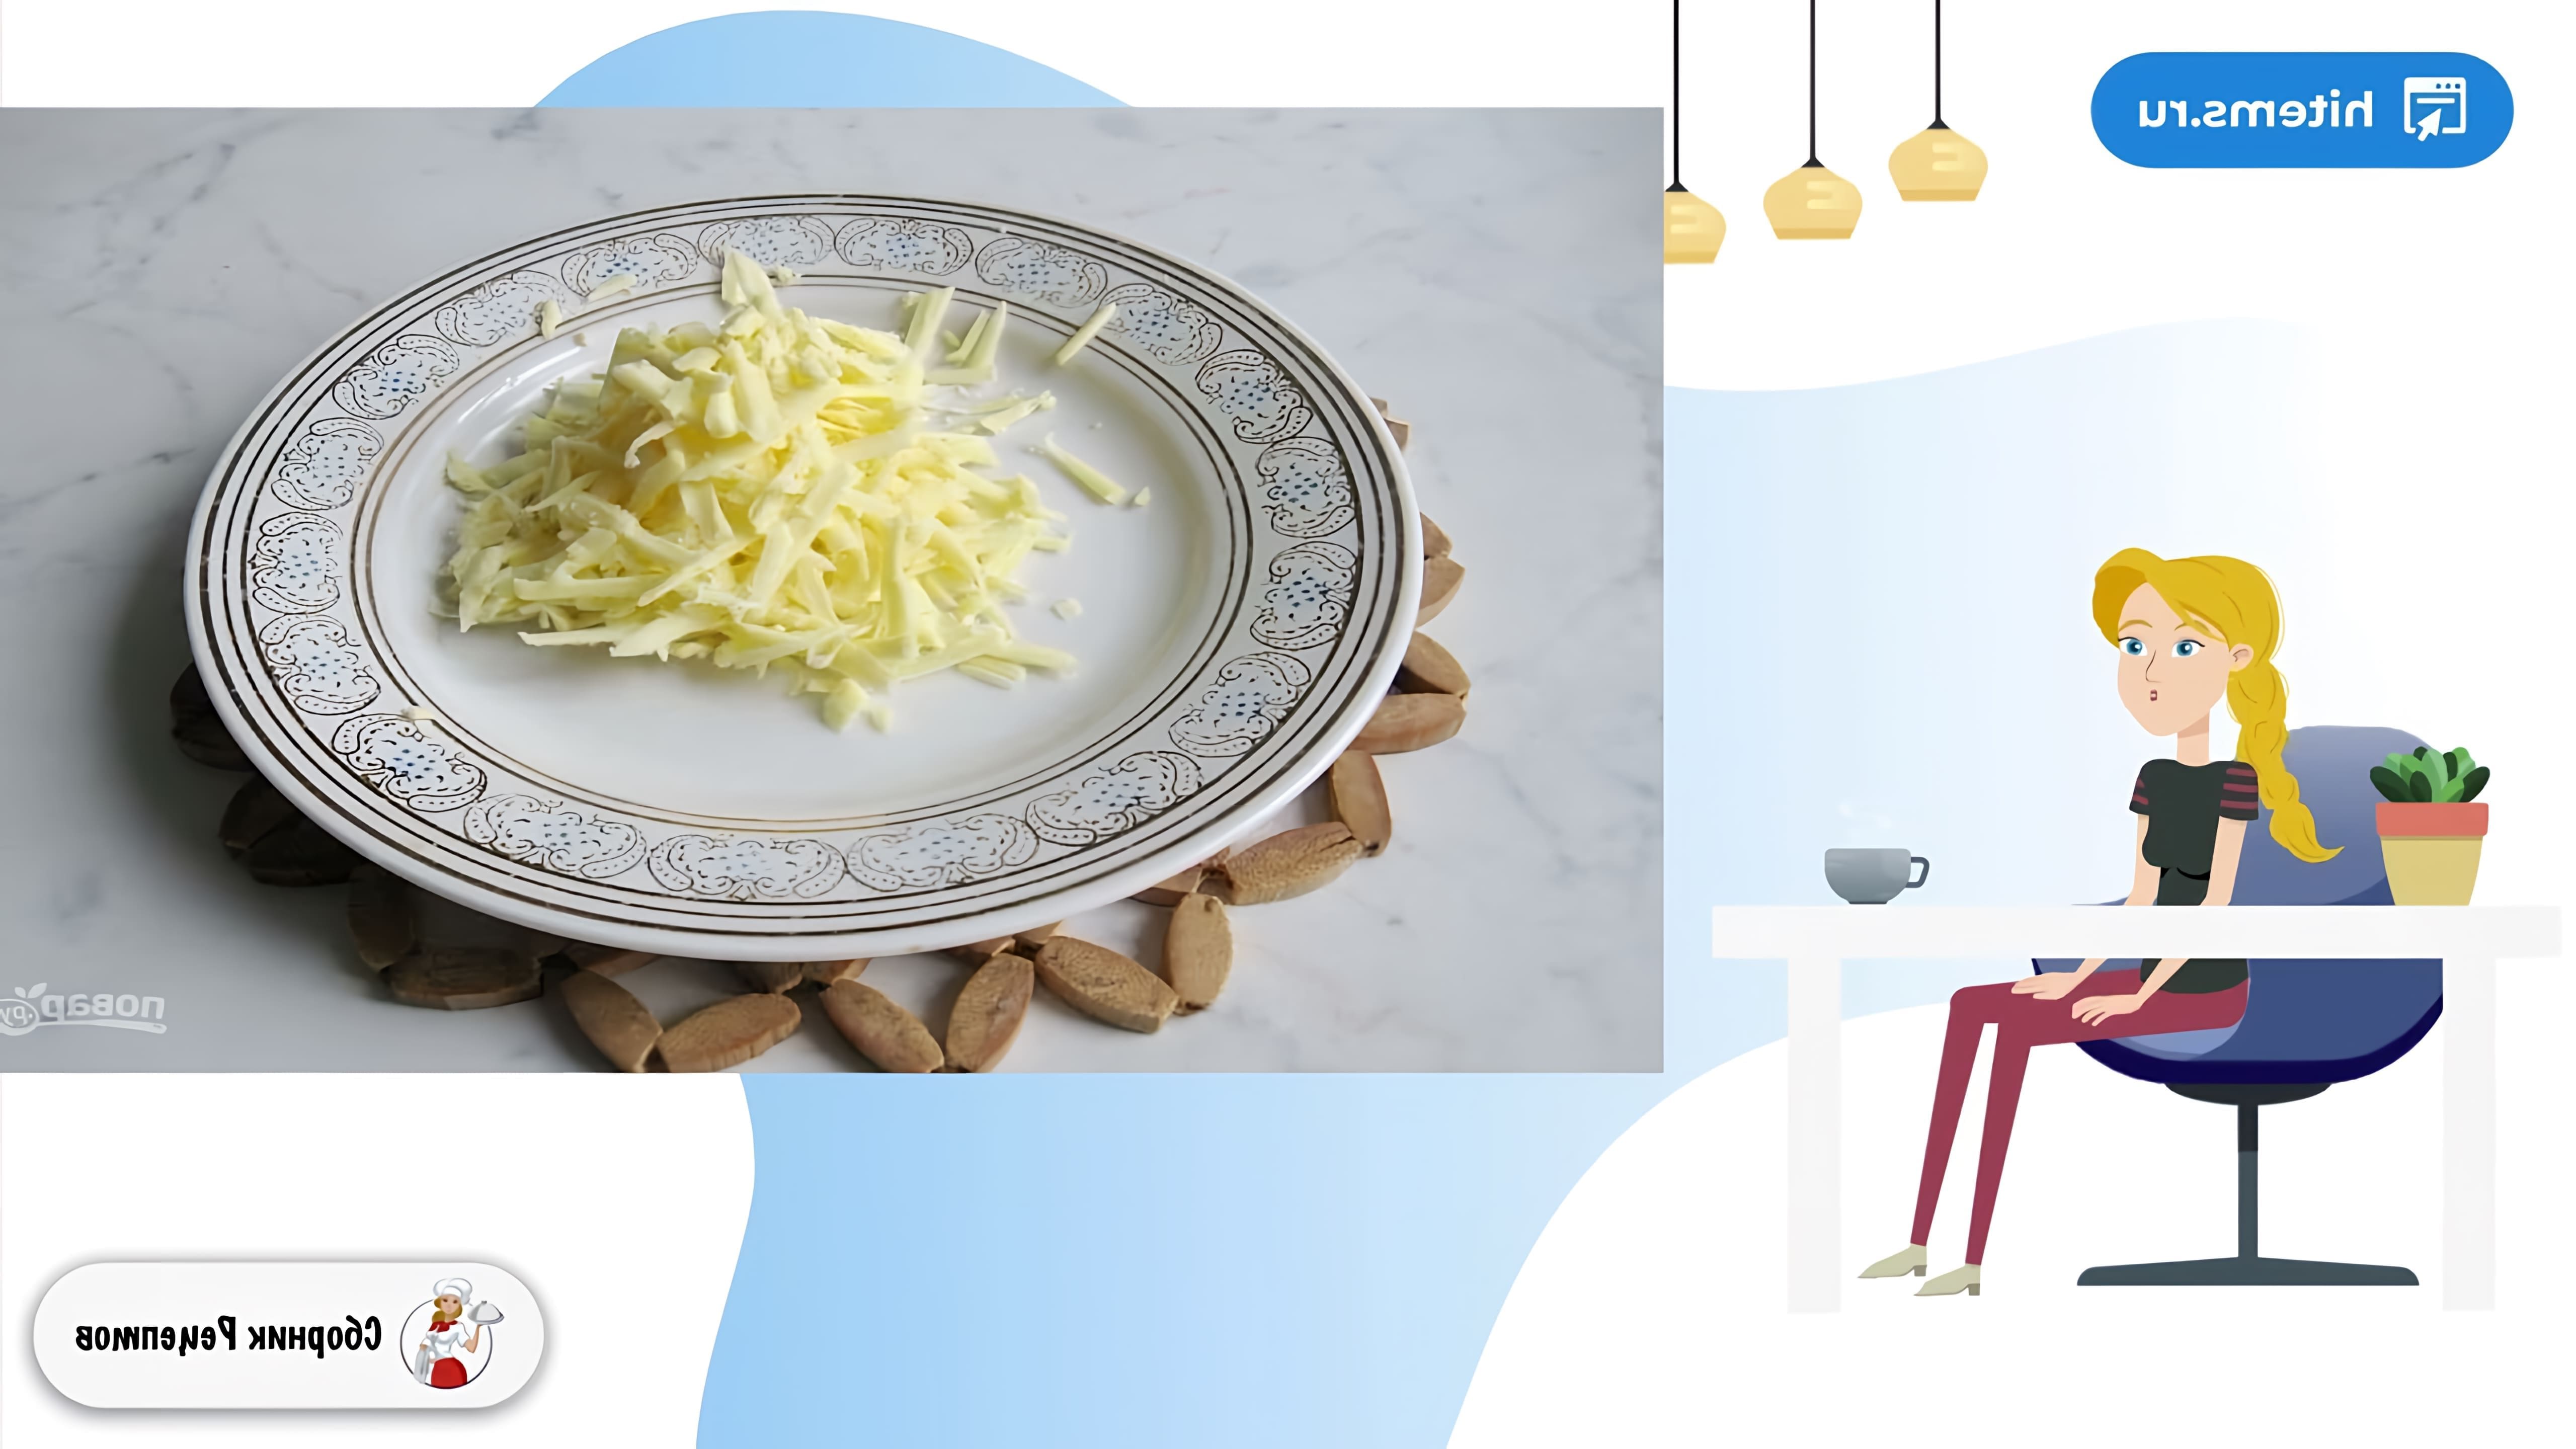 В этом видео демонстрируется рецепт приготовления салата с крабовыми палочками и сухариками в домашних условиях